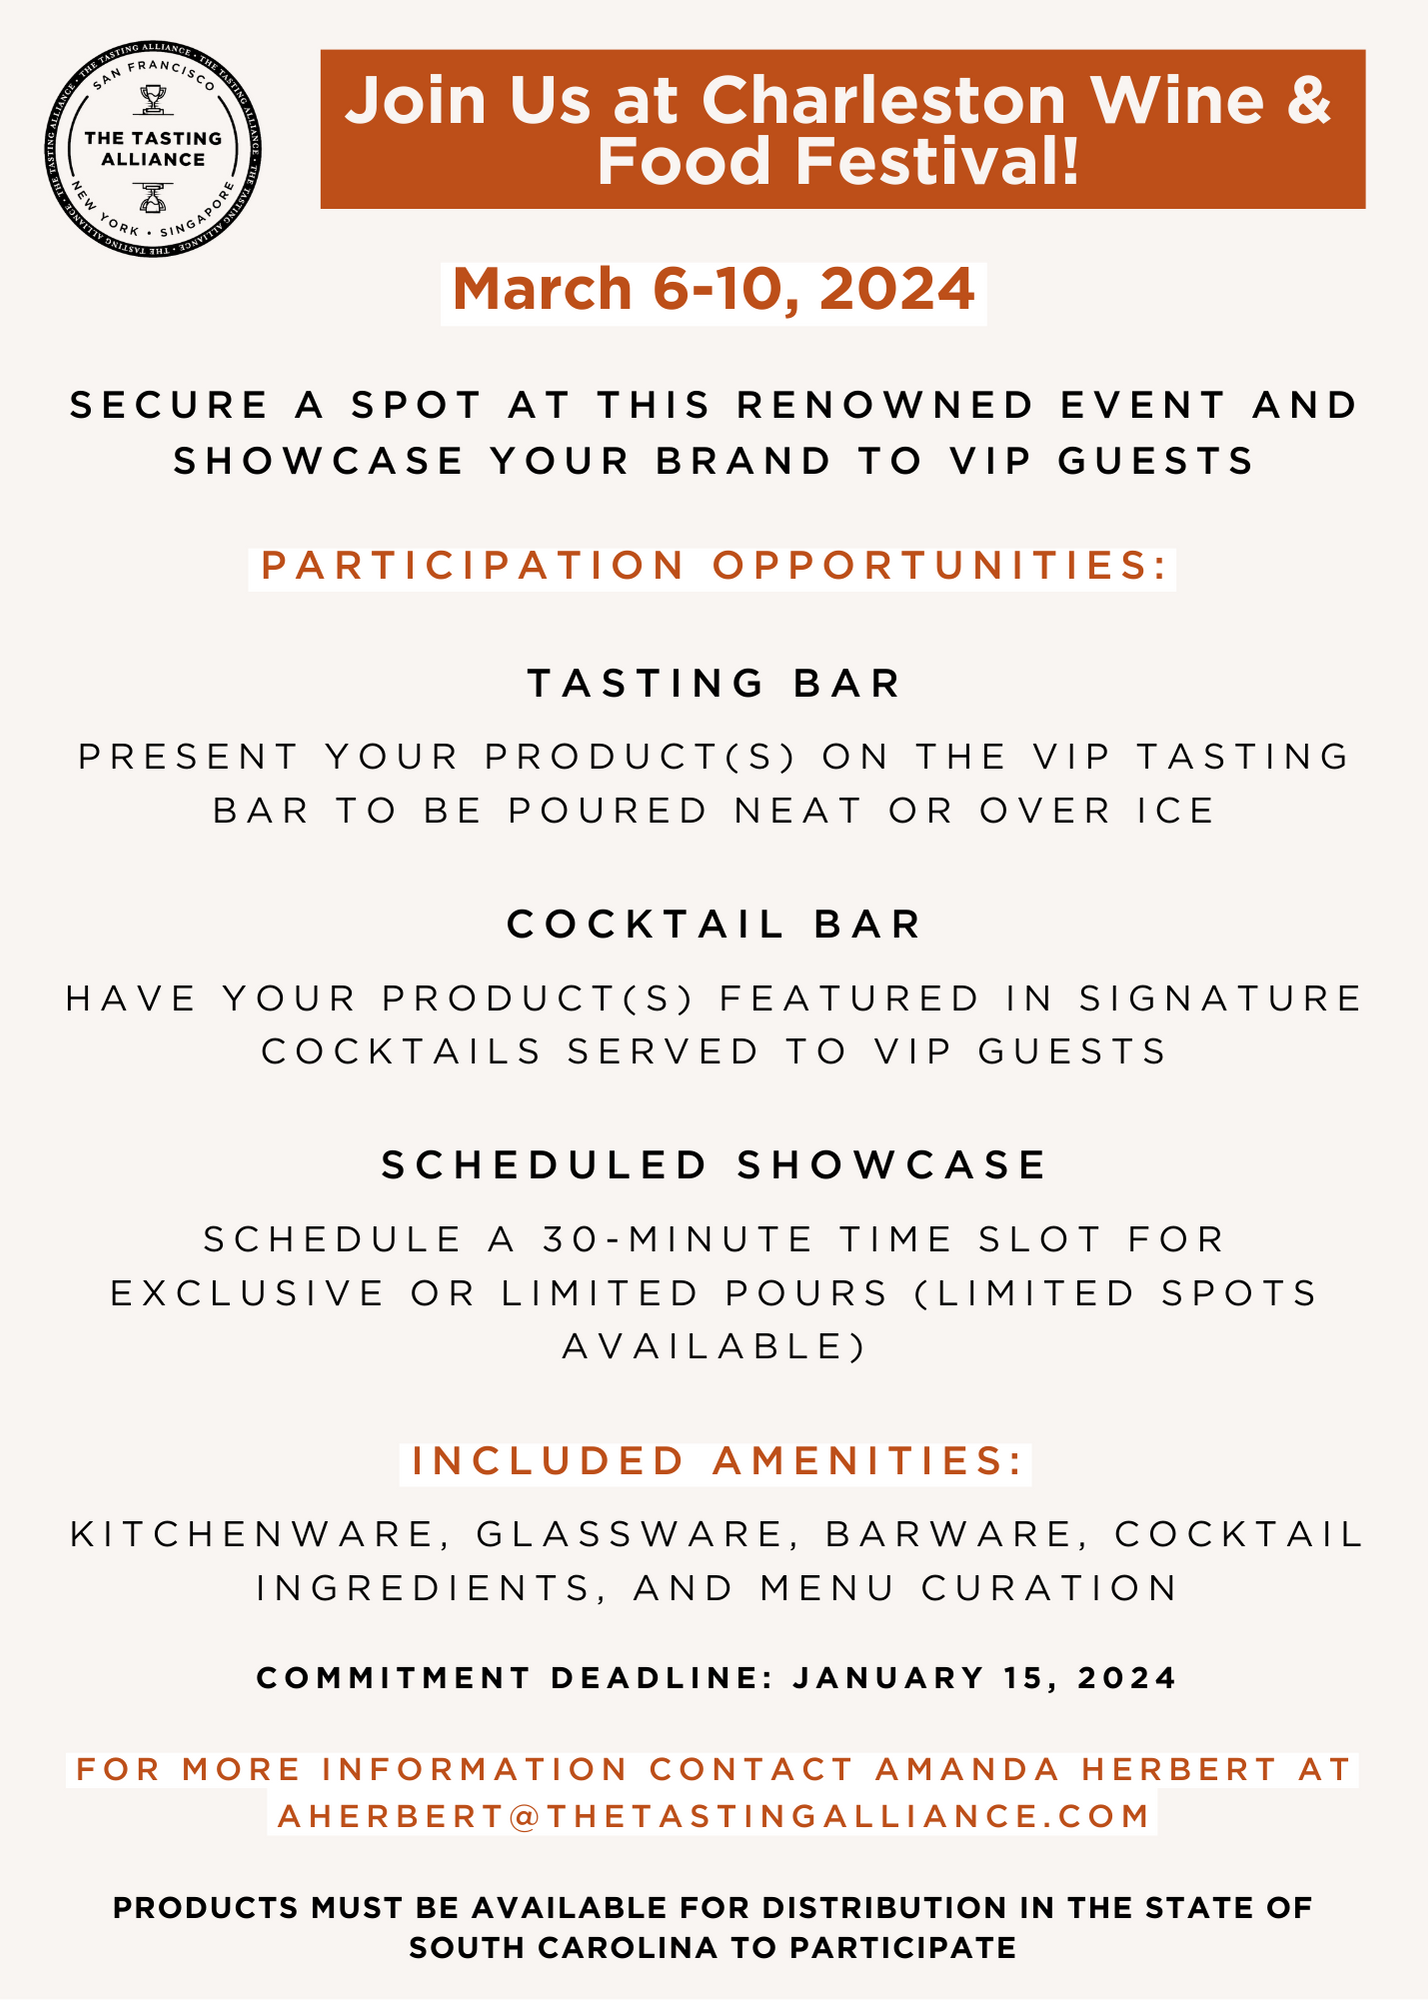 charleston-wine-food-festival-brand-participation-invite-3